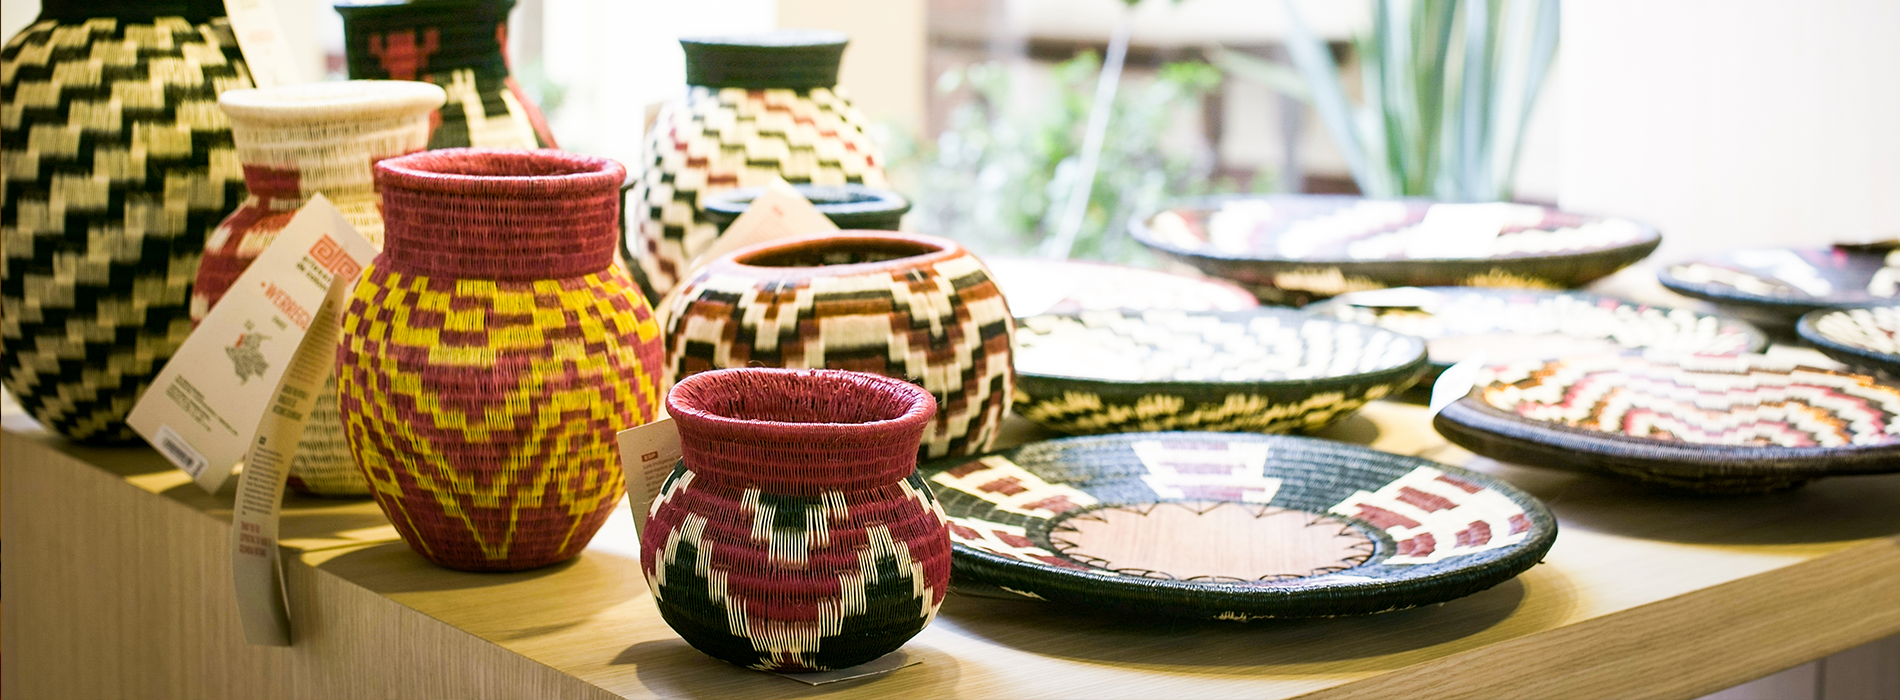 Aumenta el apetito internacional por las artesanías colombianas